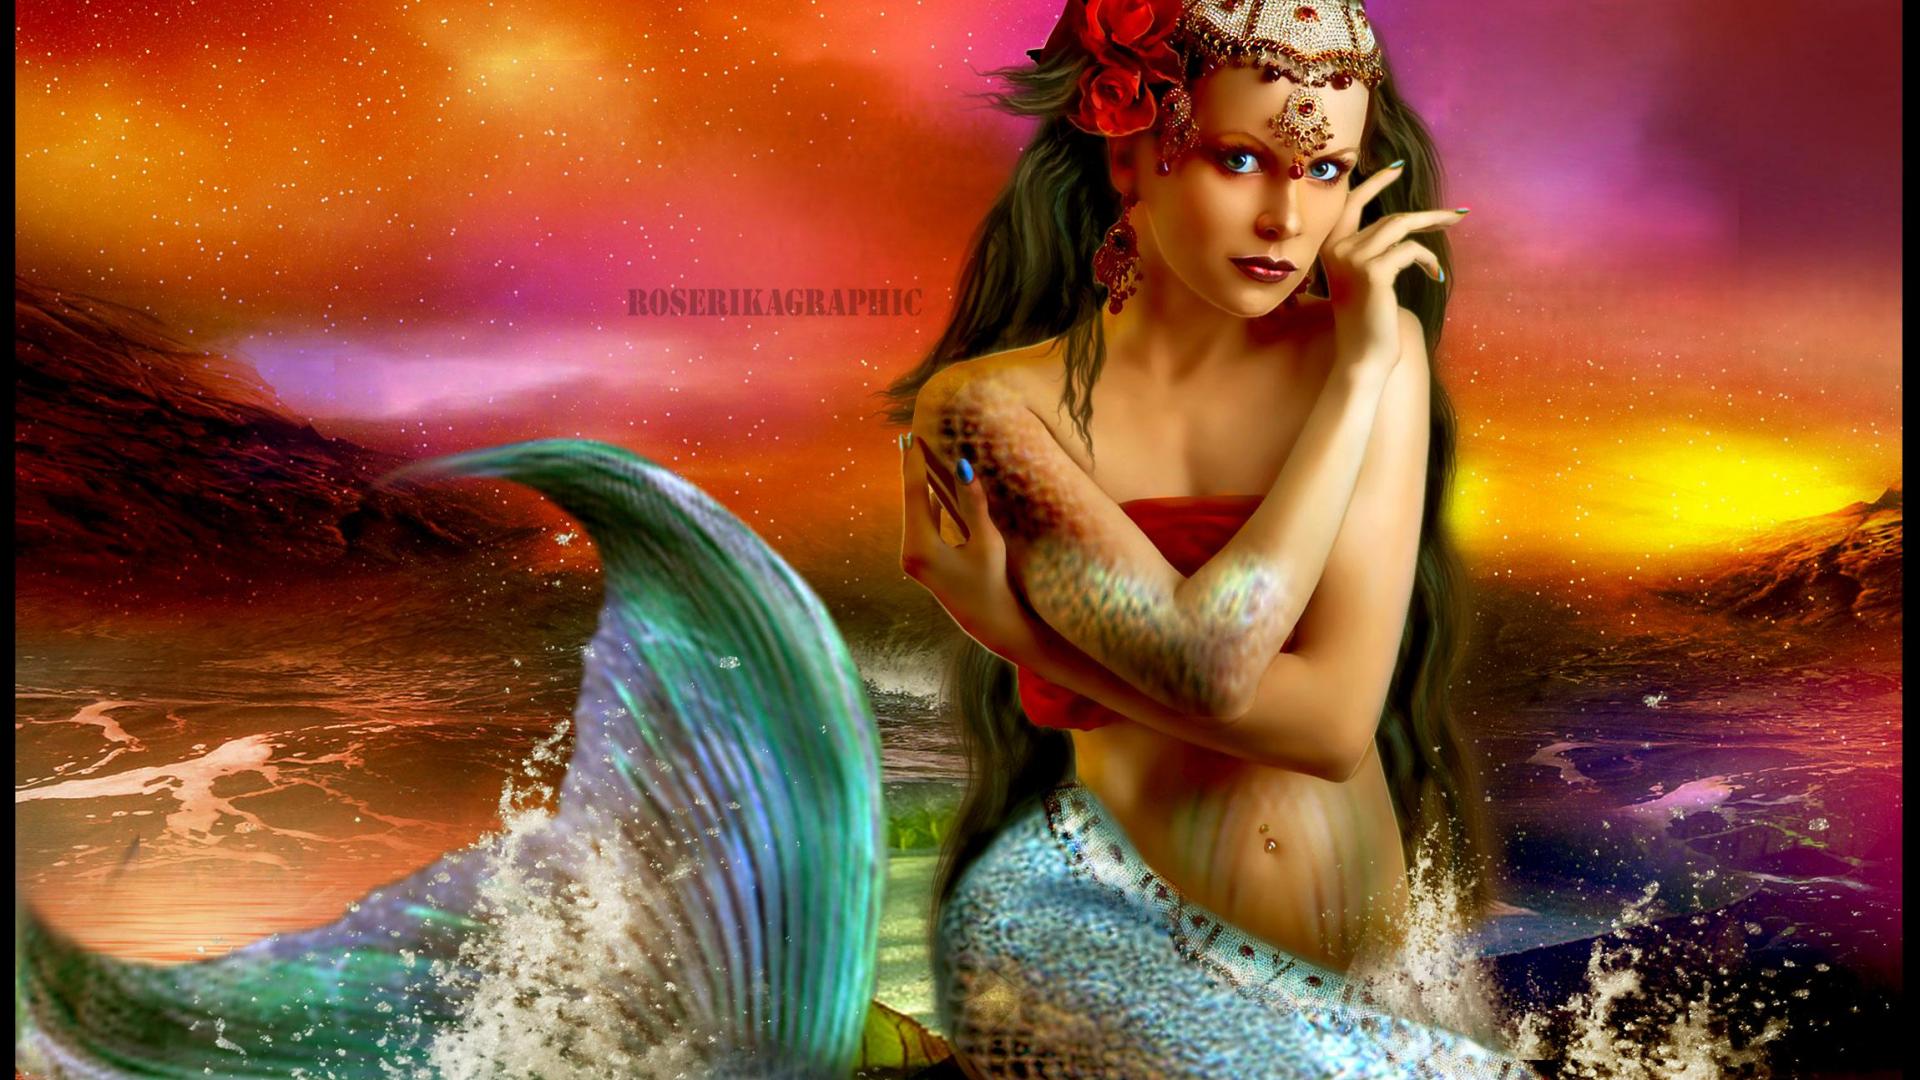 Beautiful Mermaid Girl Desktop HD Wallpaper Search More High